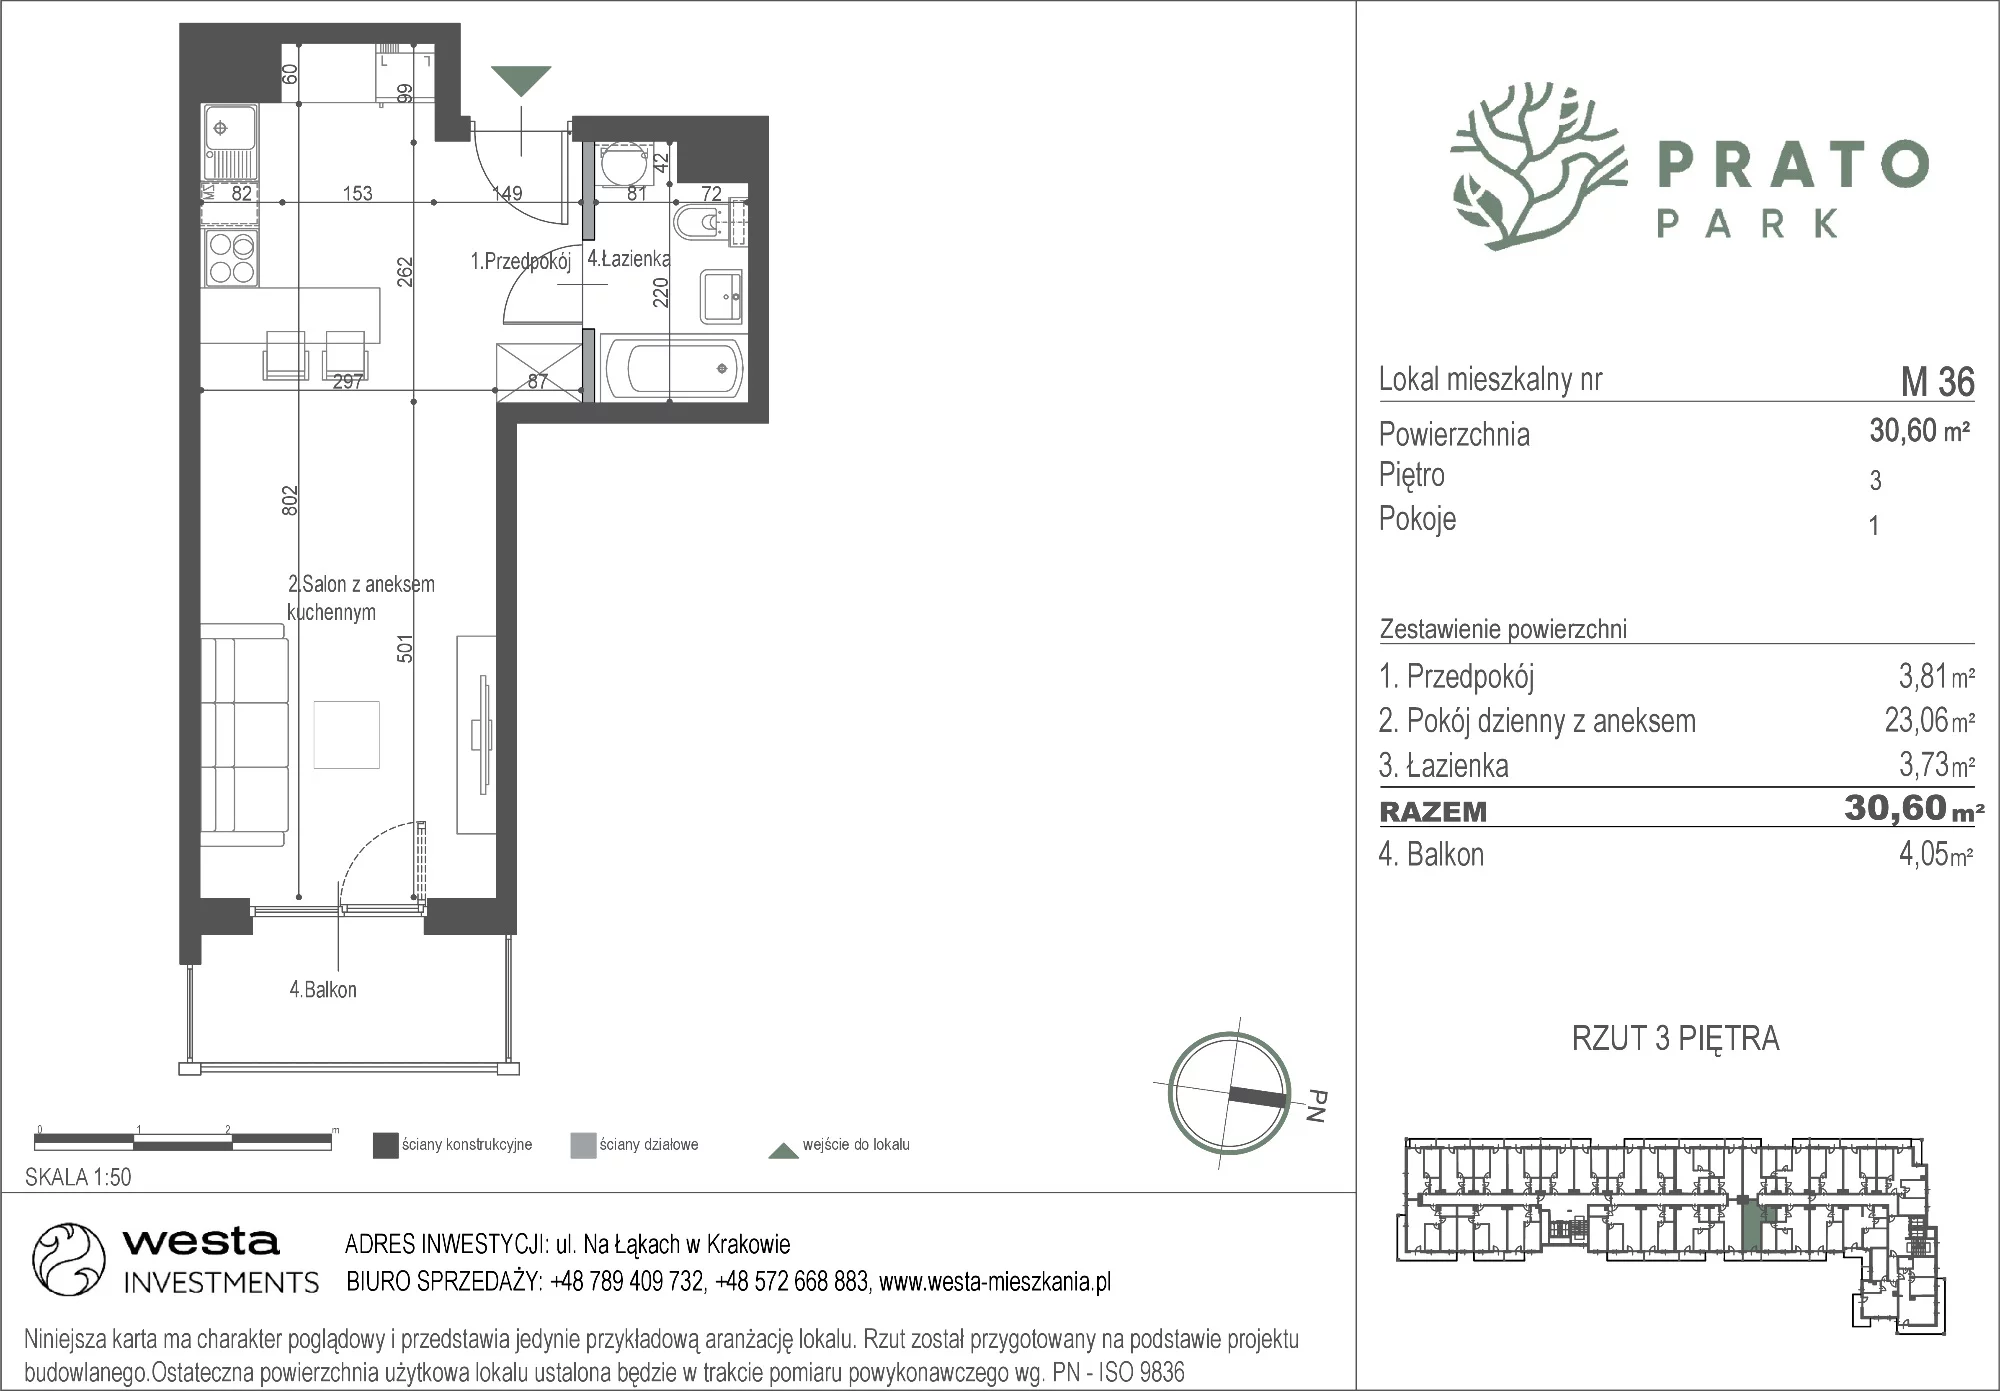 Mieszkanie 30,60 m², piętro 3, oferta nr M36, Prato Park, Kraków, Czyżyny, ul. Na Łąkach